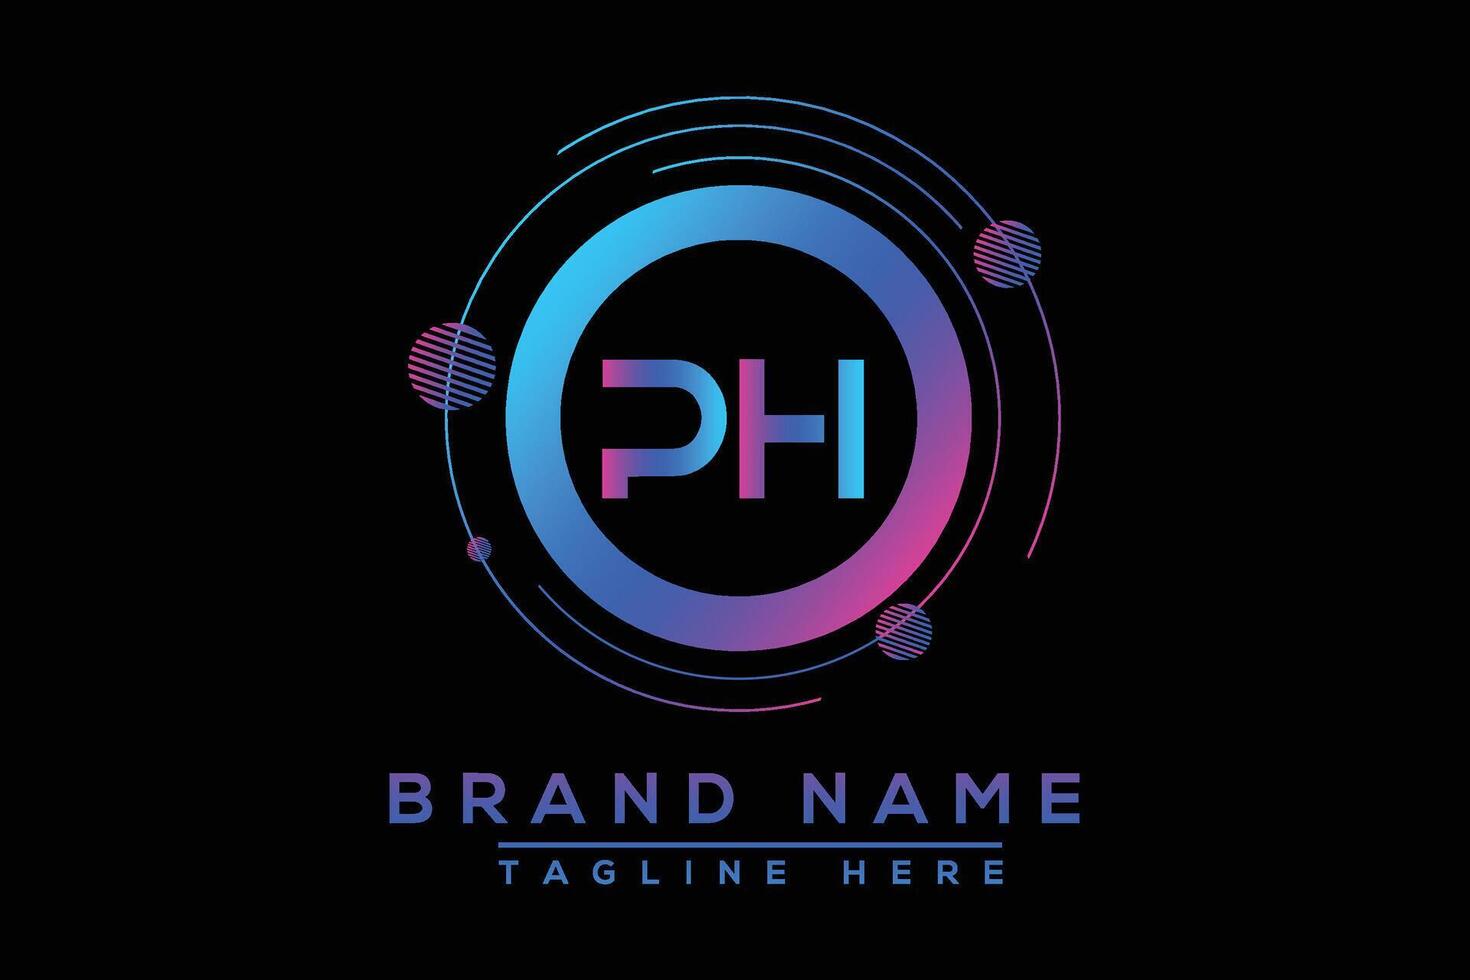 PH letter logo design. Vector logo design for business.